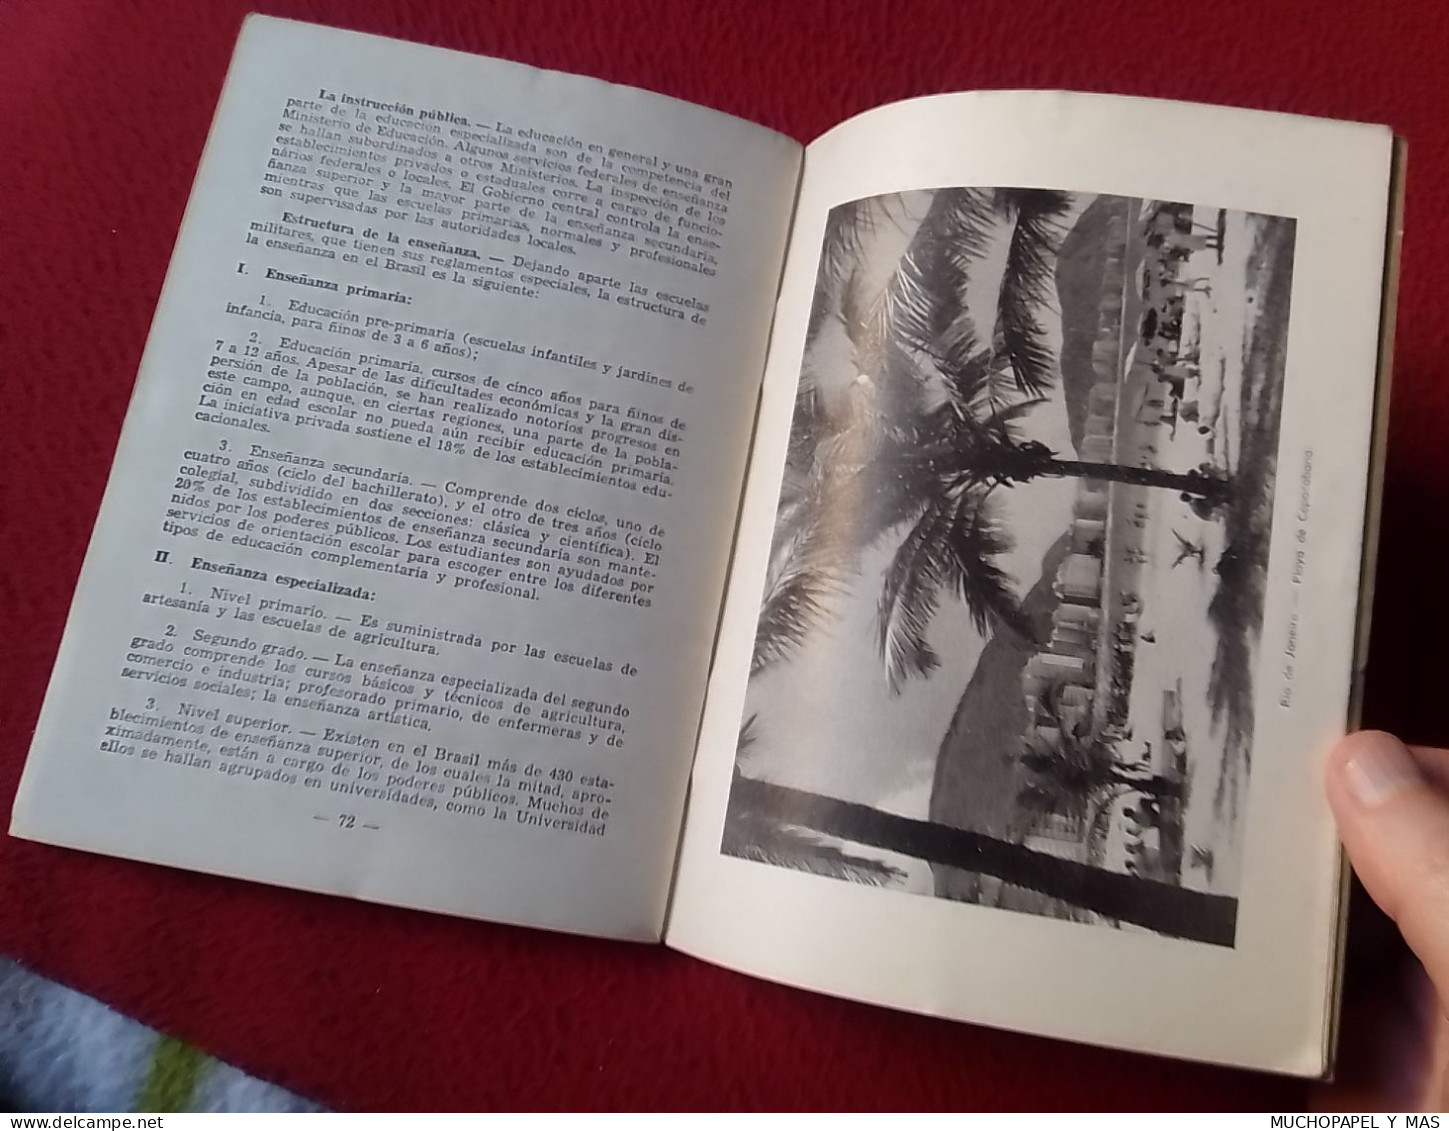 LIBRO GUÍA PUBLICACIÓN O SIMIL EL BRASIL 1954 ASPECTOS DE INTERÉS GENERAL TEXTO JOAO FRANK DA COSTA. BRAZIL...VER FOTOS.